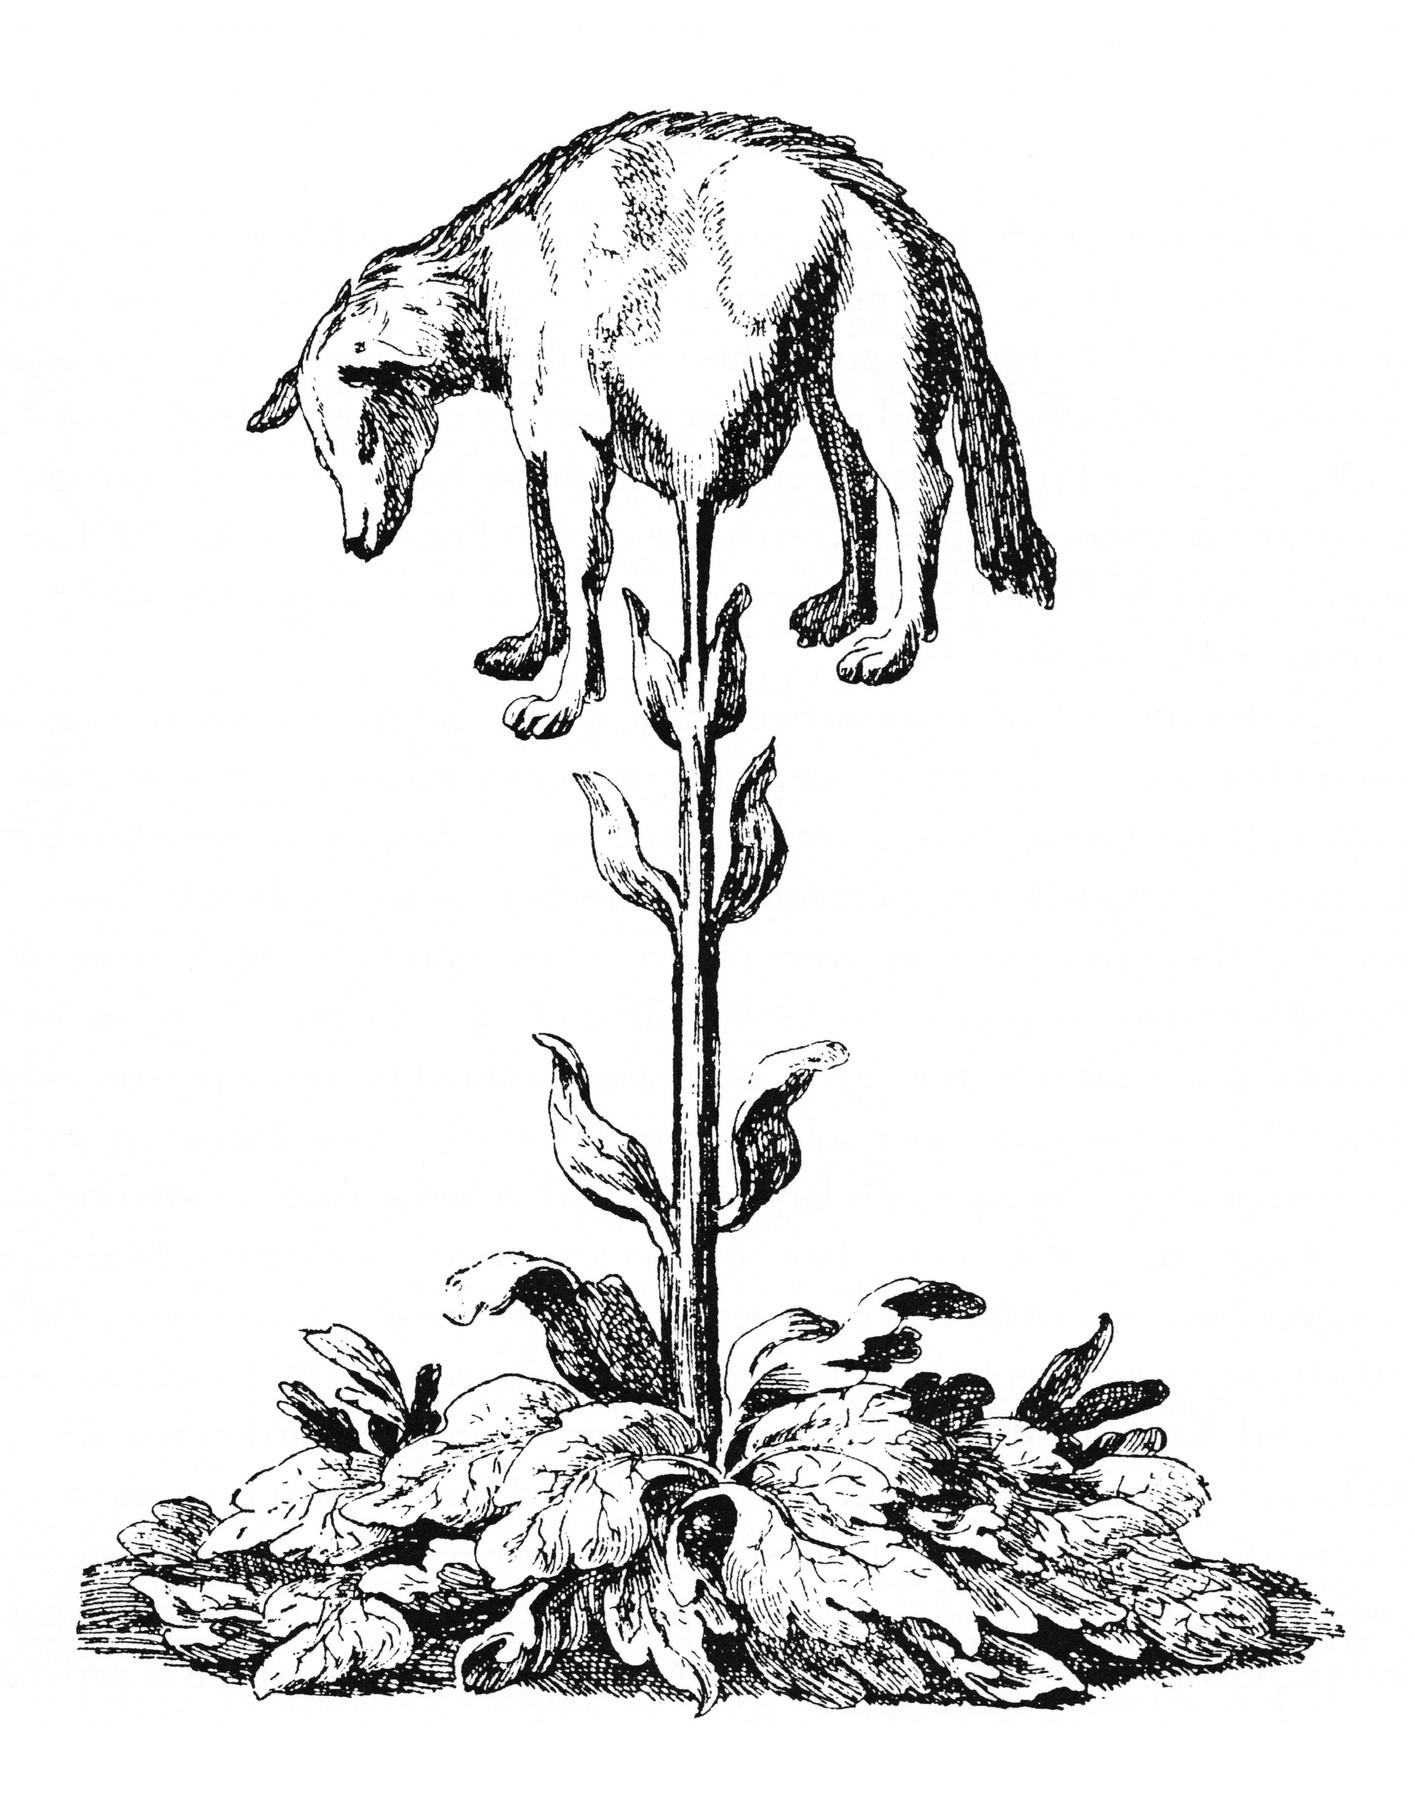 vegetable_lamb_-lee-_1887-.jpg